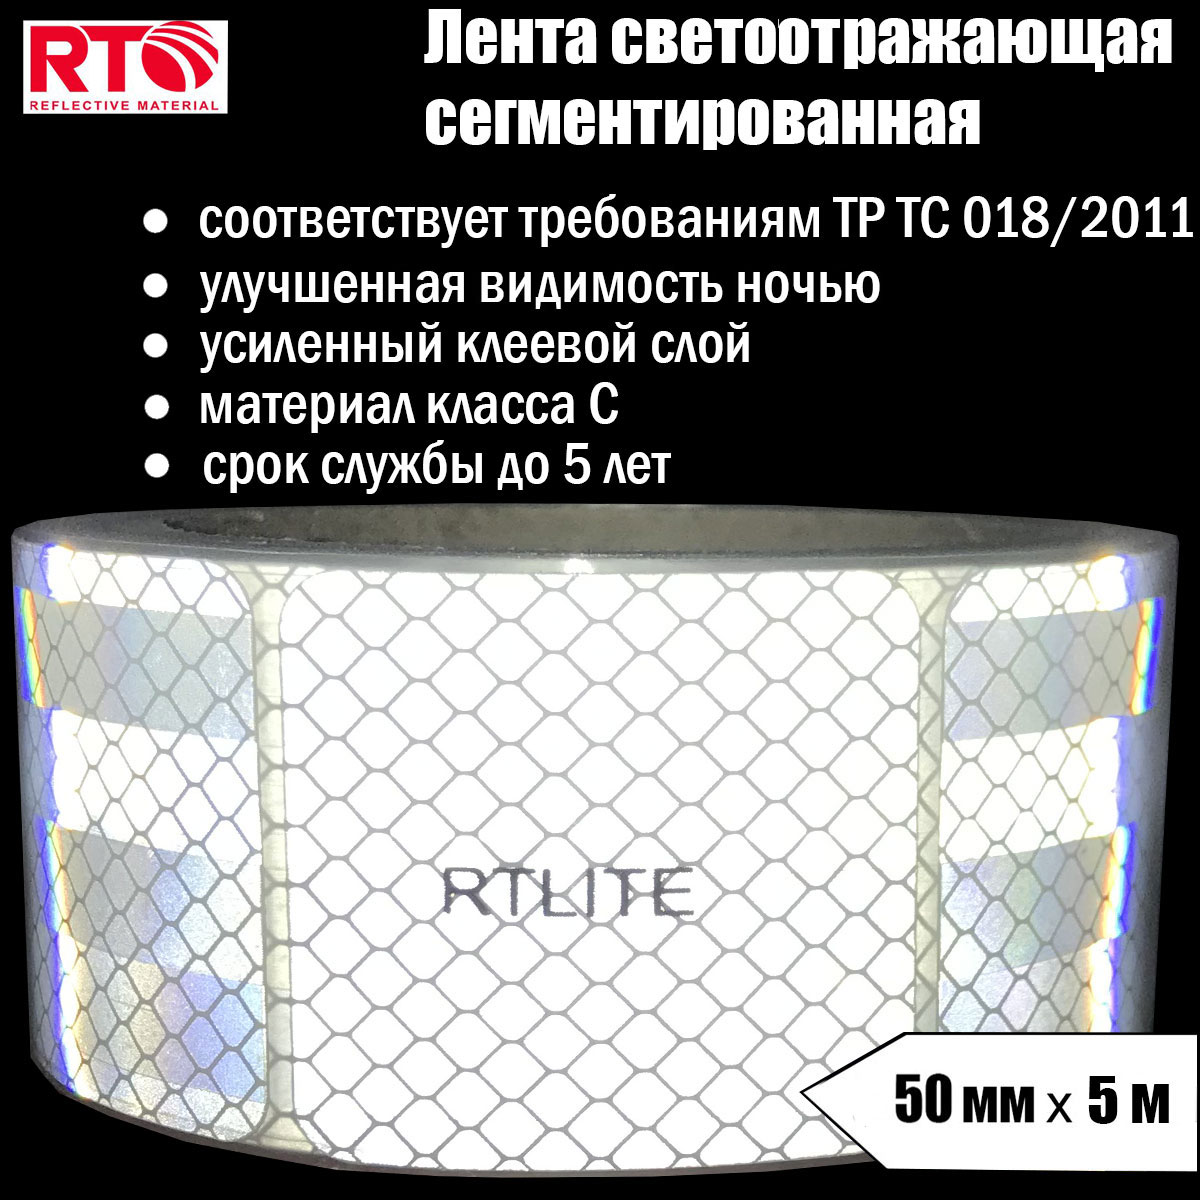 Лента светоотражающая сегментированная RTLITE RT-V104 для контурной маркировки, 50мм х 5м наклейка светоотражающая 91×3 5 см на кузов авто белый